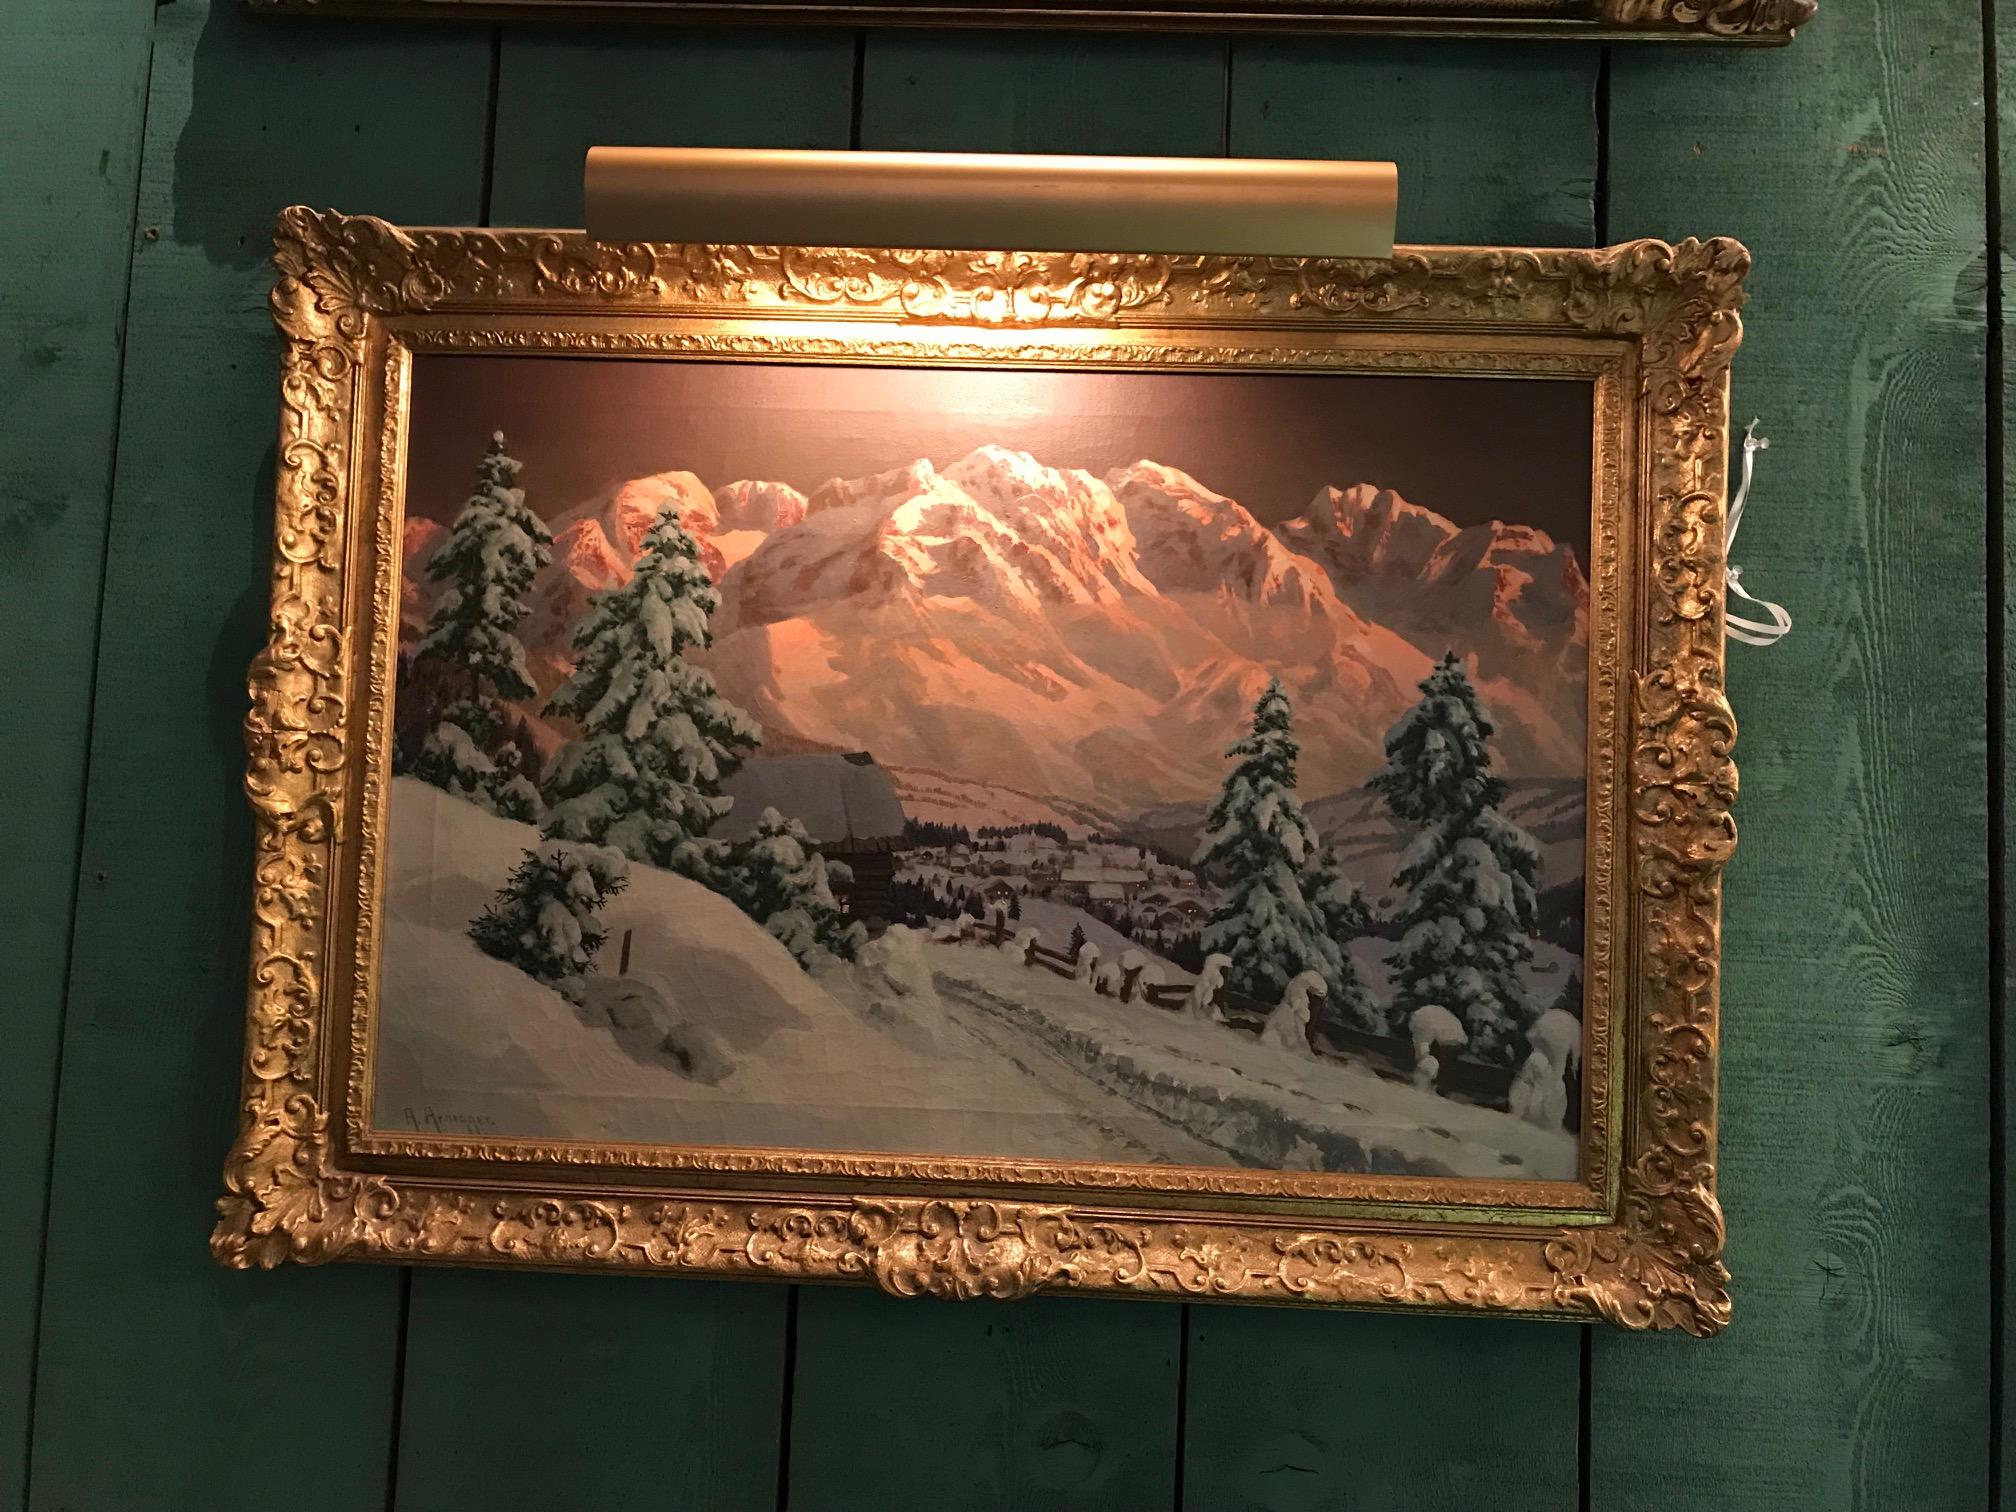 Paysage d'hiver / scène de neige de la fin du 19e siècle et du début du 20e siècle, par Alois Arnegger, huile sur toile, signée A. Arnegger, avec cadre ancien doré. 
Mesures : Hauteur 31